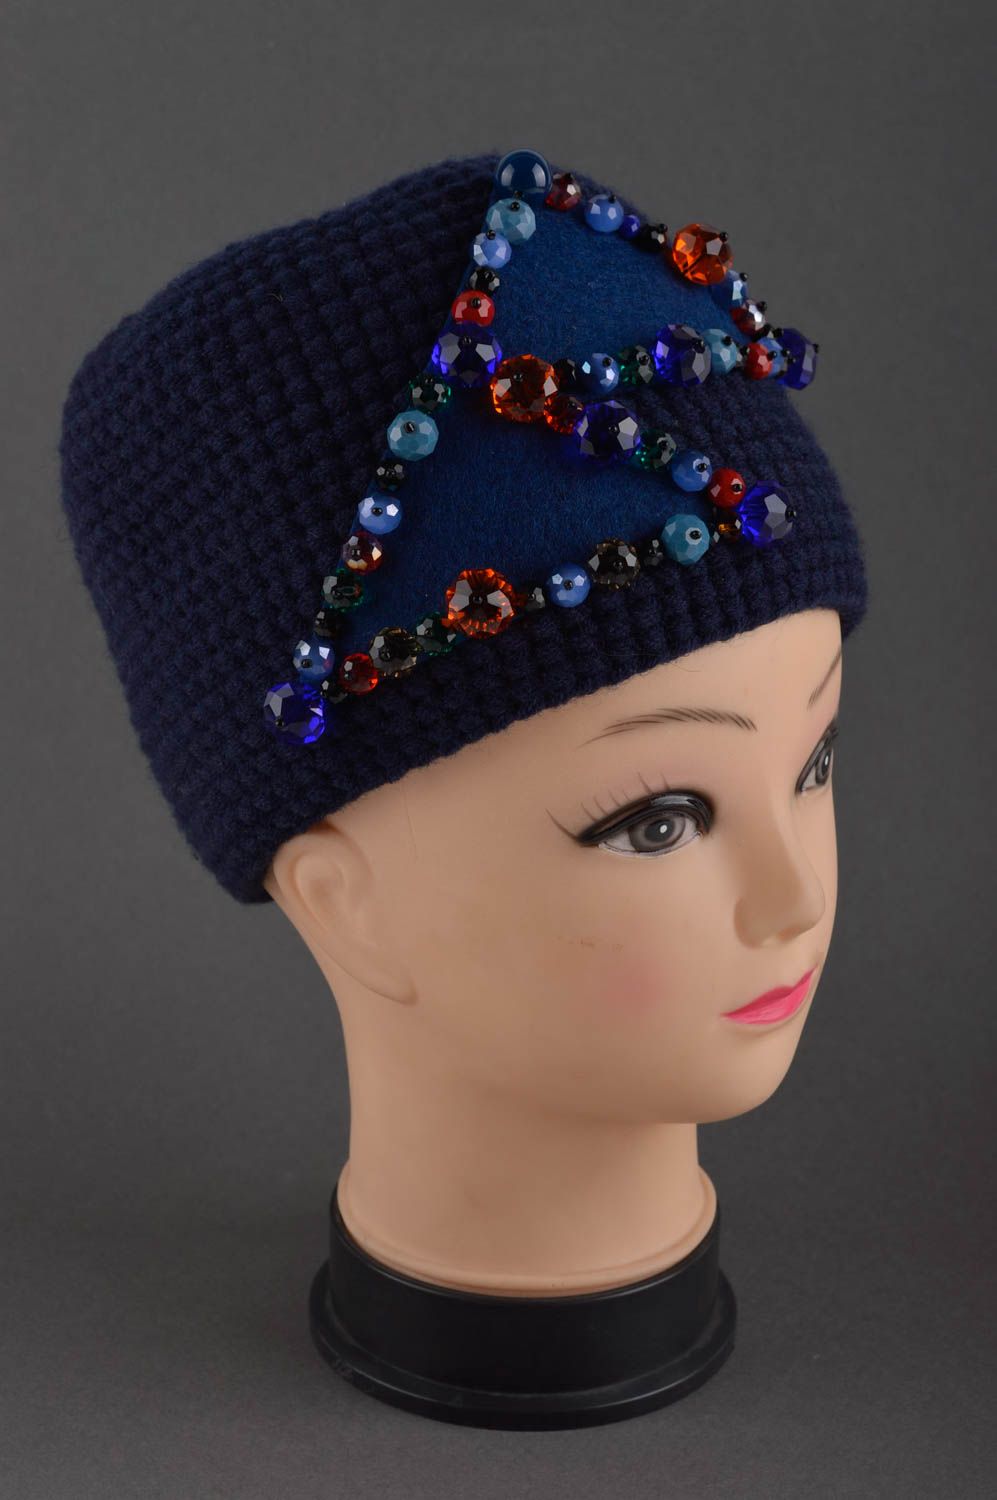 Handmade womens hat warm hat woolen hat designer accessories gifts for women photo 1